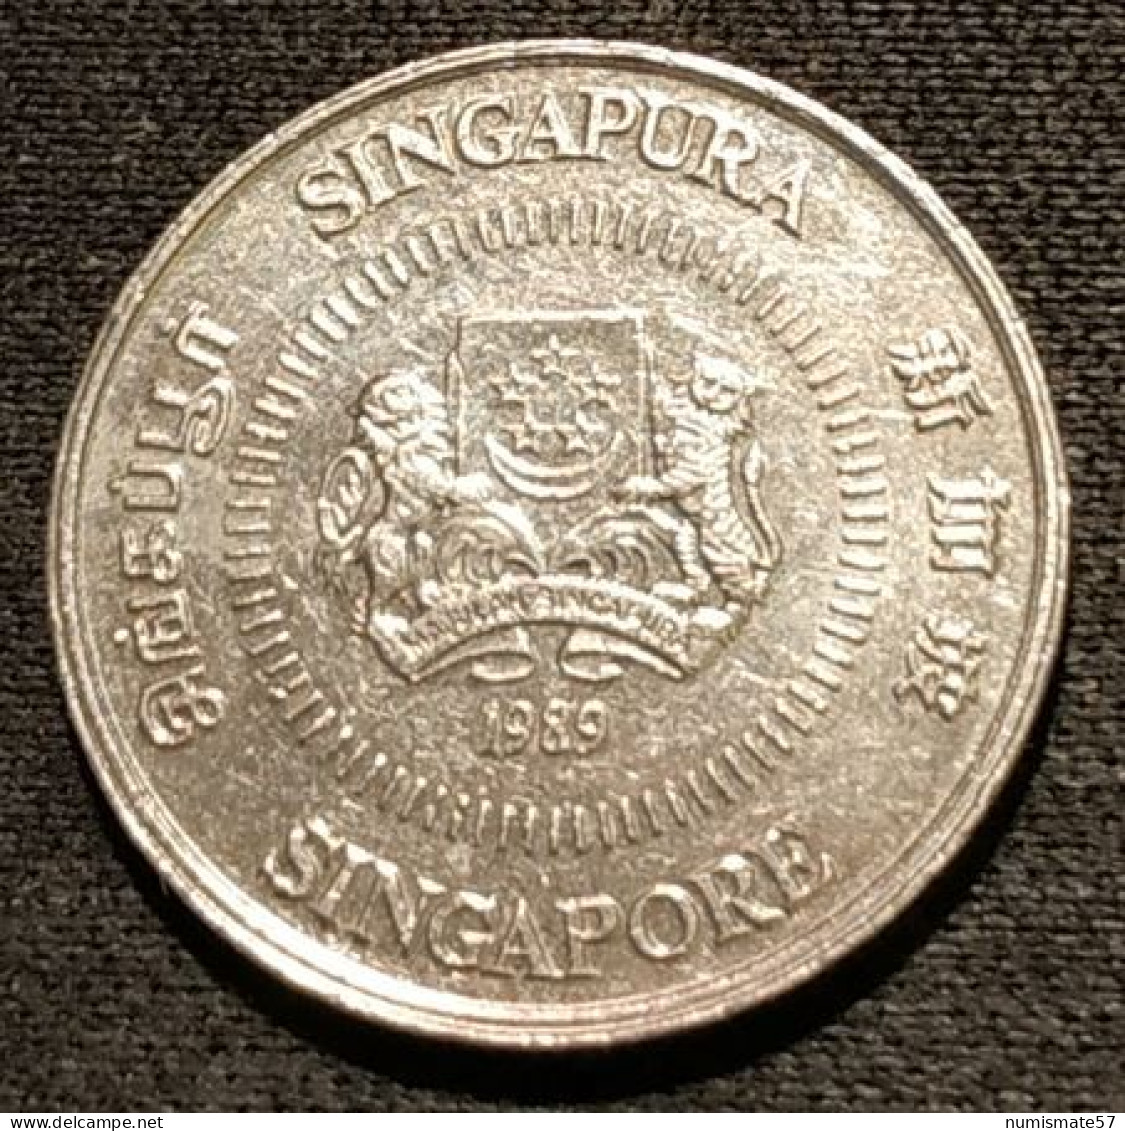 SINGAPOUR - SINGAPORE - 10 CENTS 1989 - KM 51 - ( Blason Haut ) - Singapour